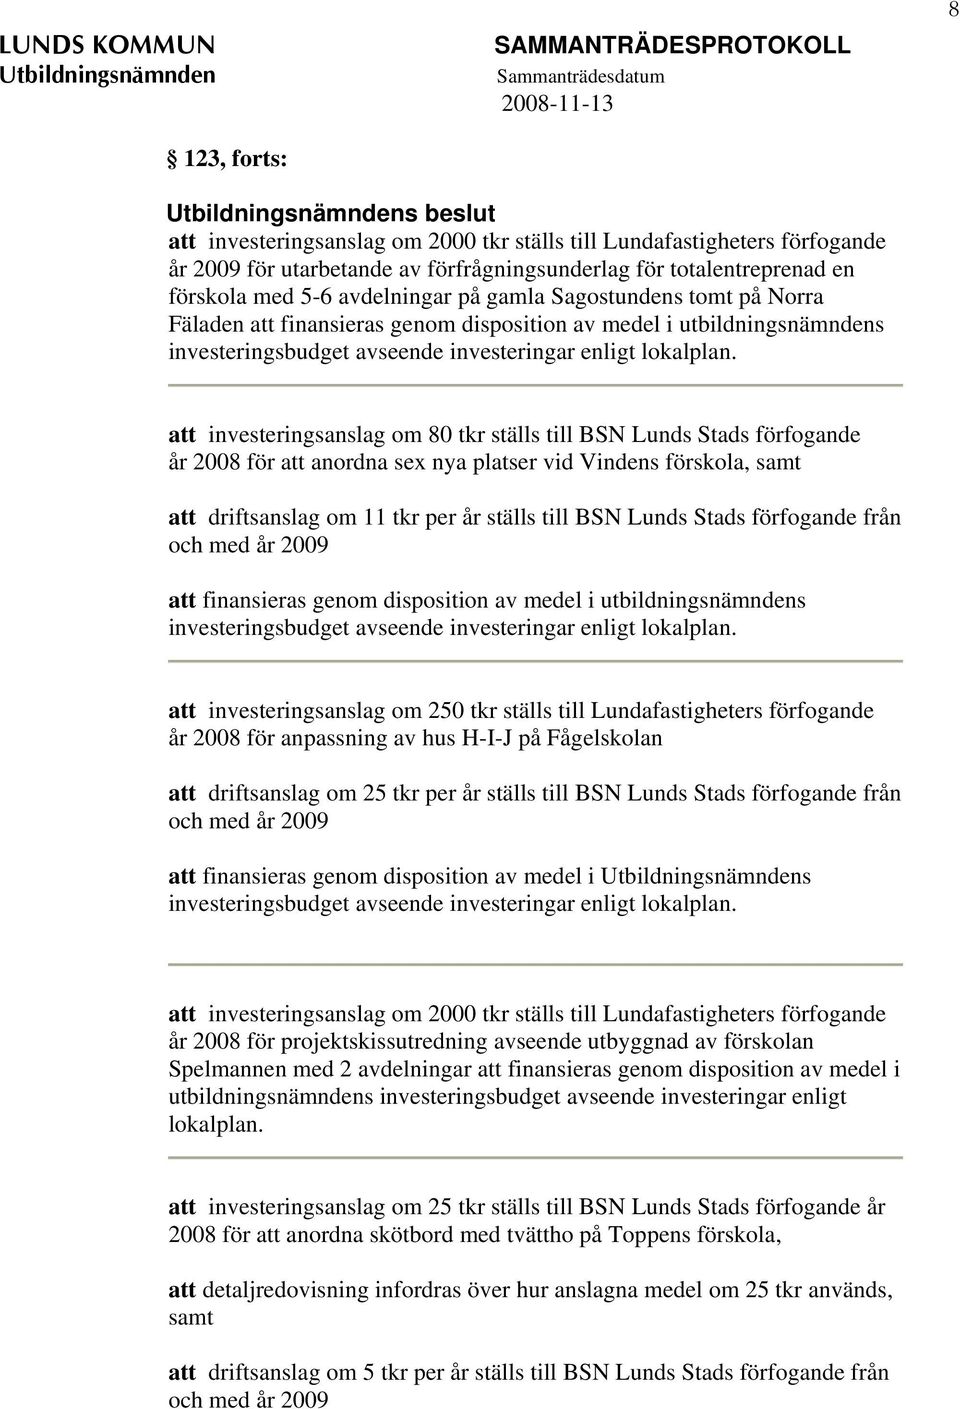 att investeringsanslag om 80 tkr ställs till BSN Lunds Stads förfogande år 2008 för att anordna sex nya platser vid Vindens förskola, samt att driftsanslag om 11 tkr per år ställs till BSN Lunds